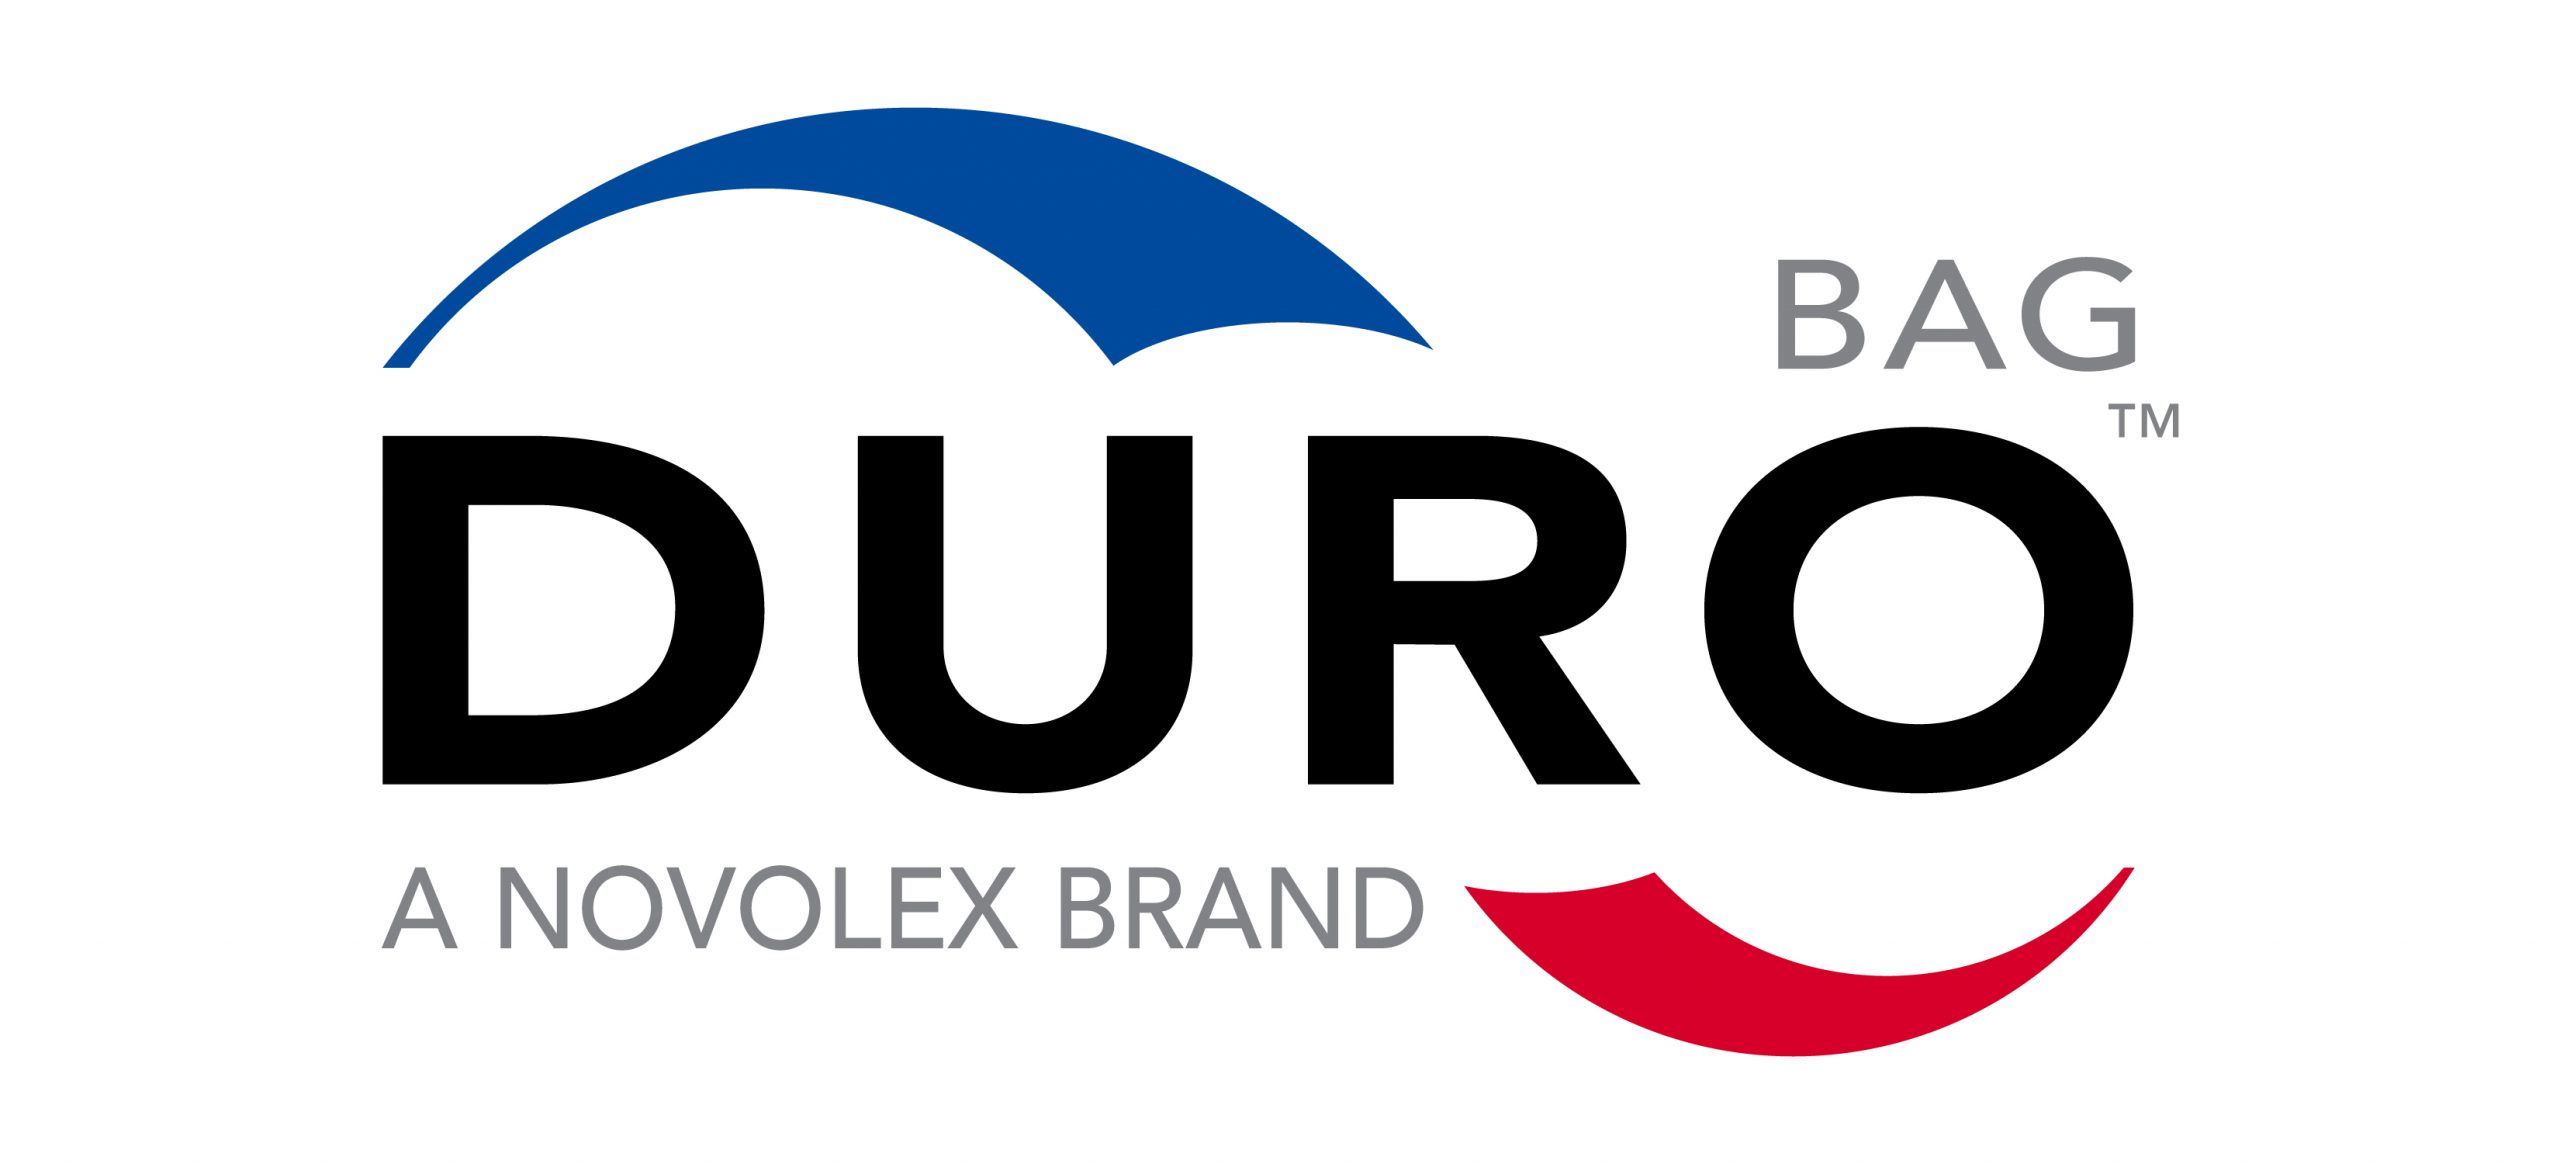 https://fame-usa.com/wp-content/uploads/2021/06/Duro_Bag_Brands_Logo_600_dl-scaled.jpg